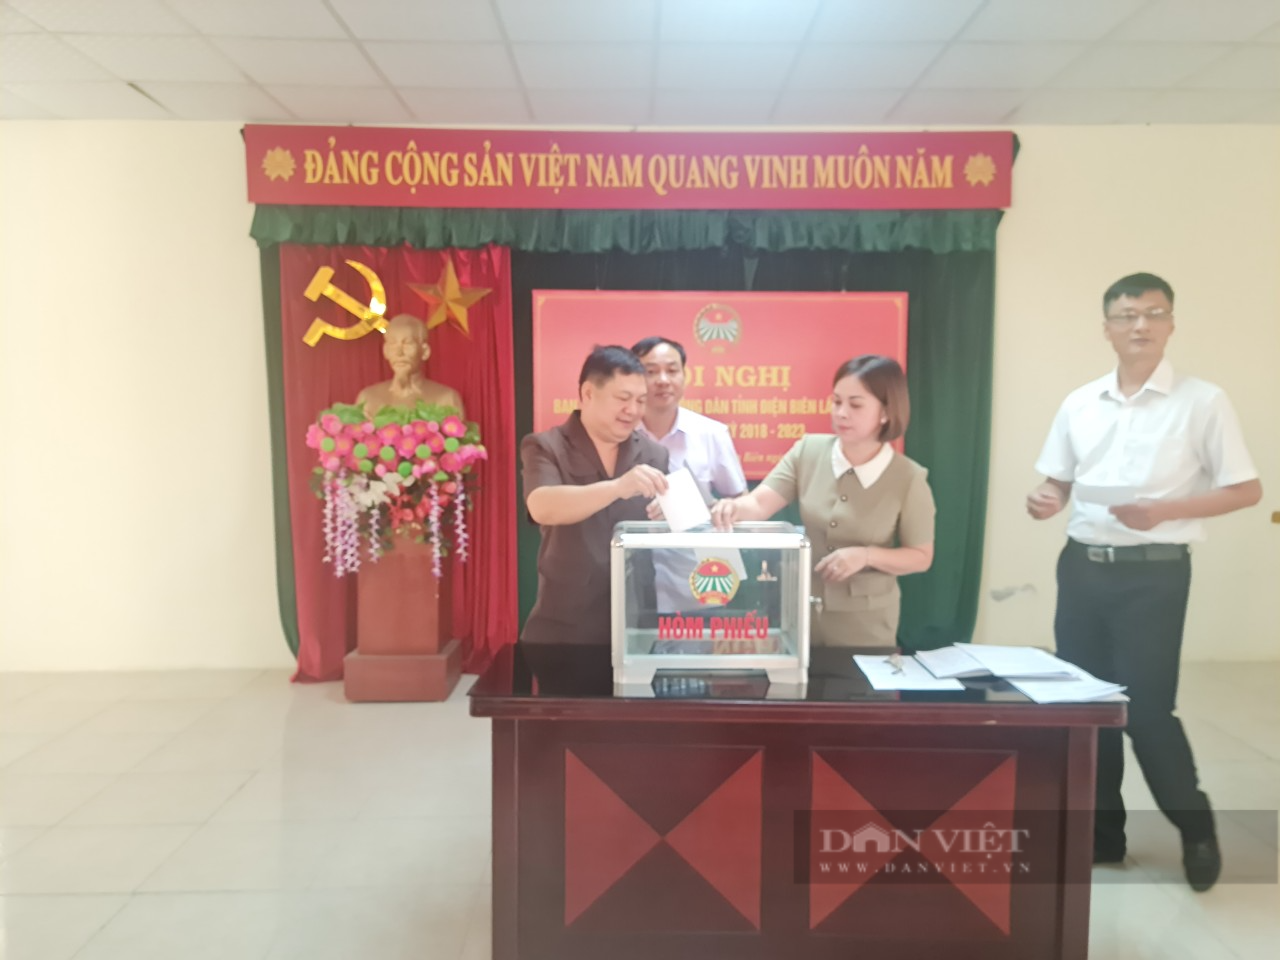 Điện Biên: Bà Vàng Thị Bình được bầu giữ chức Chủ tịch Hội Nông dân tỉnh khóa IX, nhiệm kỳ 2018 - 2023 - Ảnh 1.